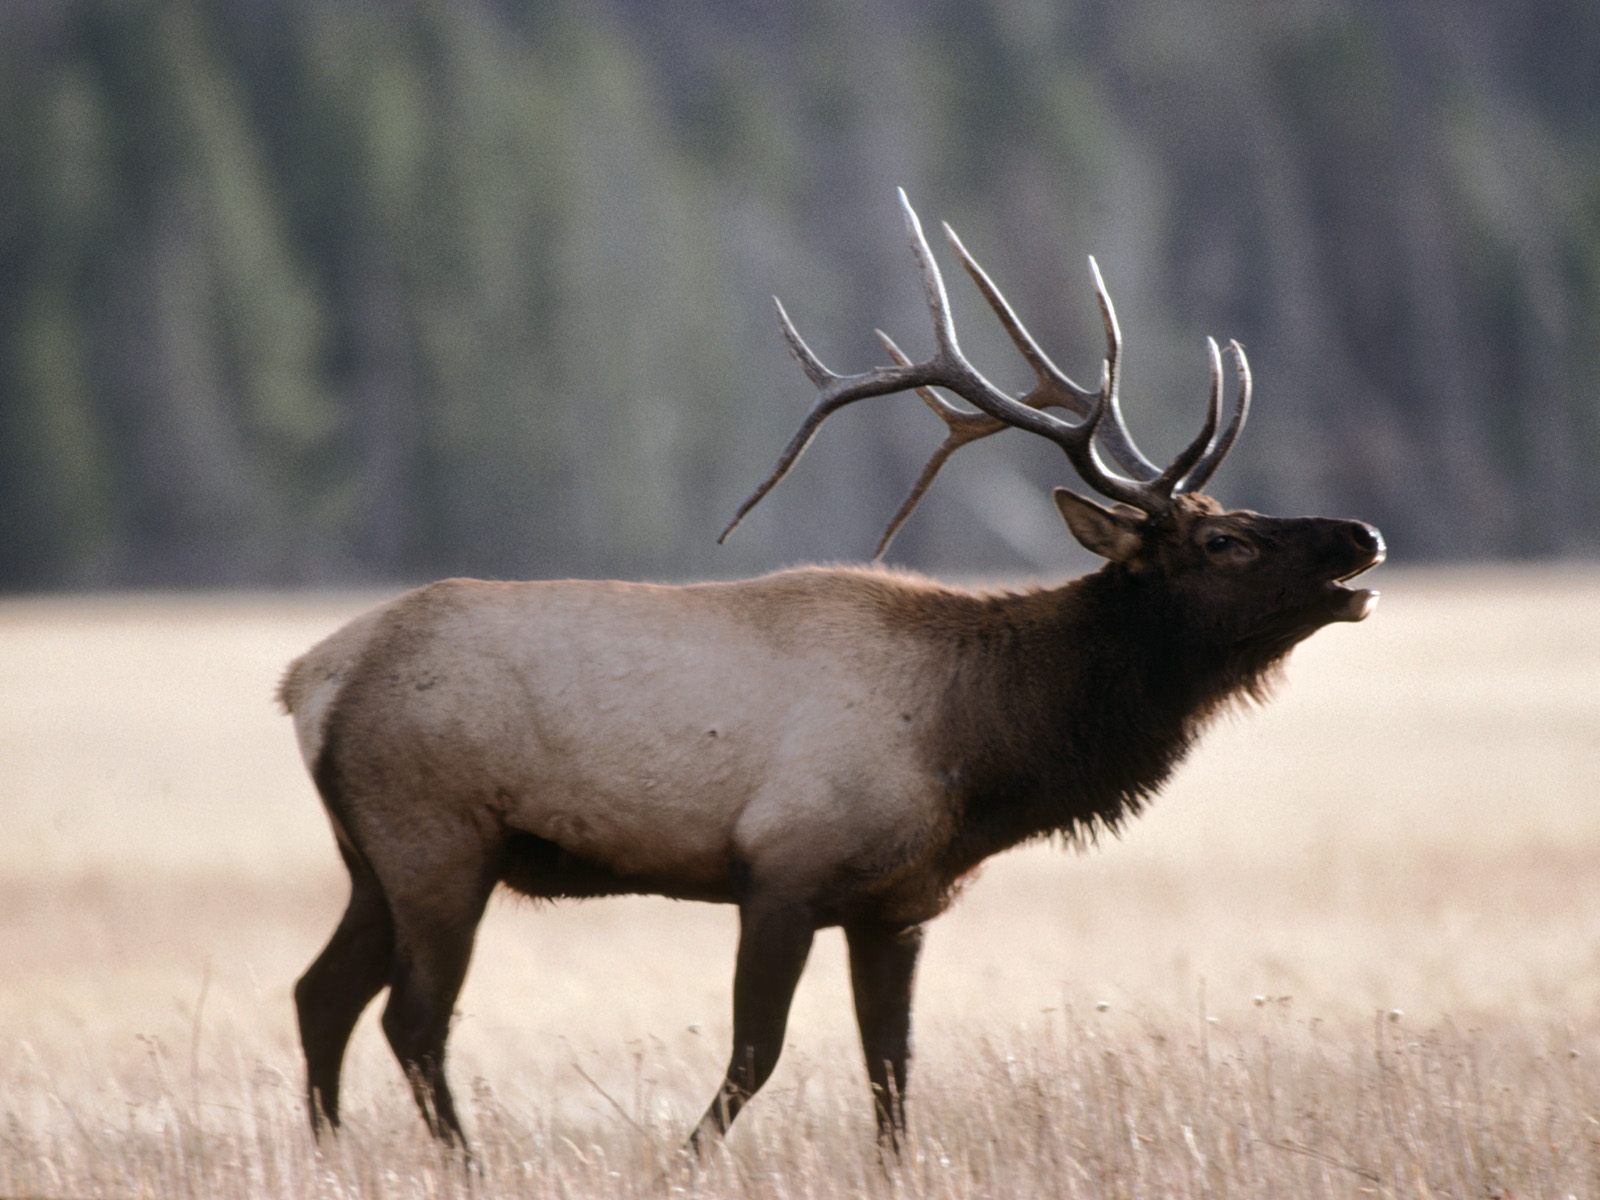 Boom Pow Twang: Countdown for Elk